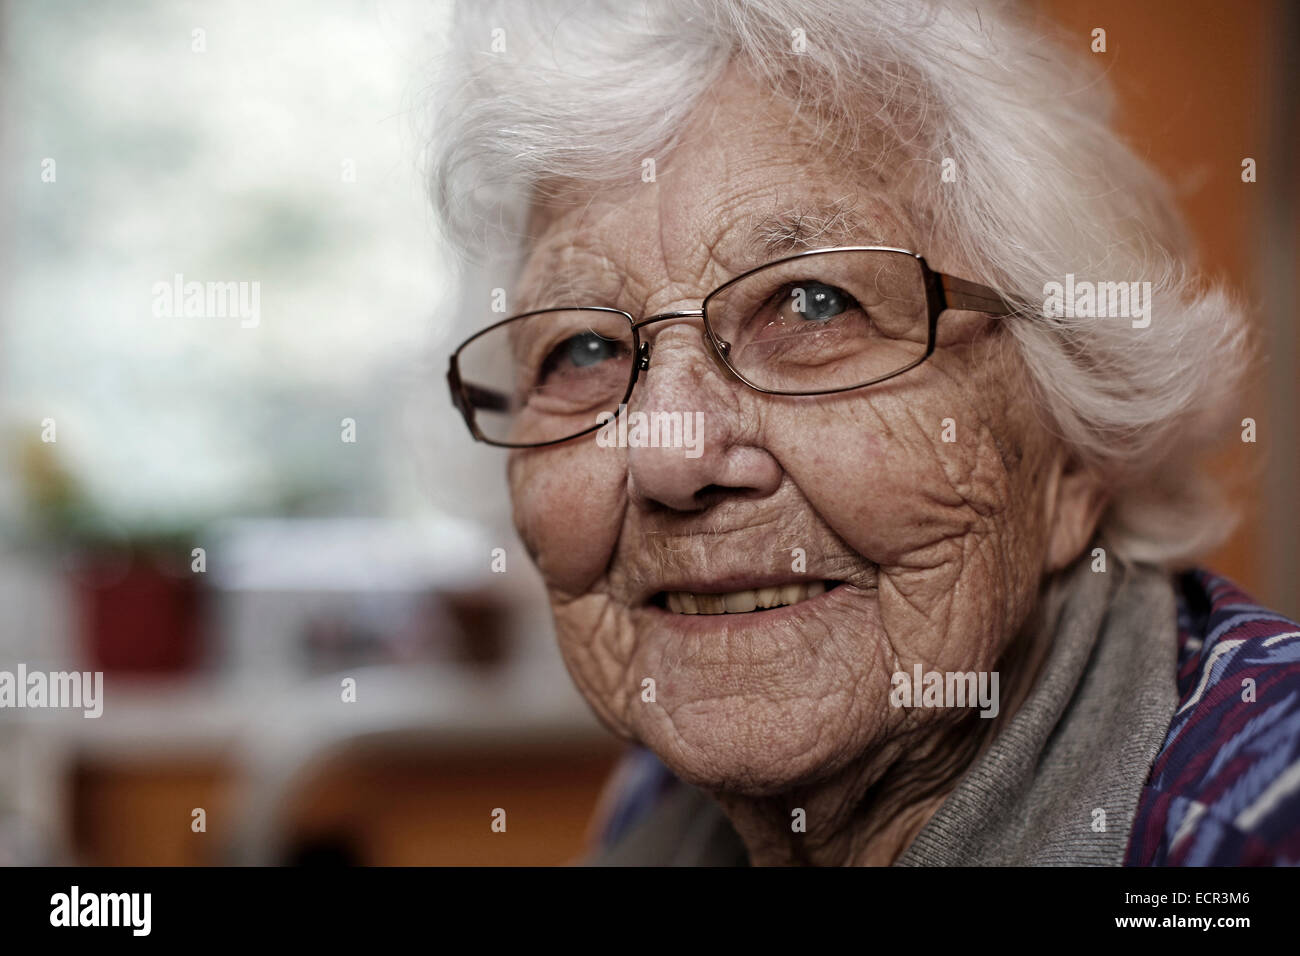 Femme de 93 ans, une maison de soins infirmiers, portrait Banque D'Images